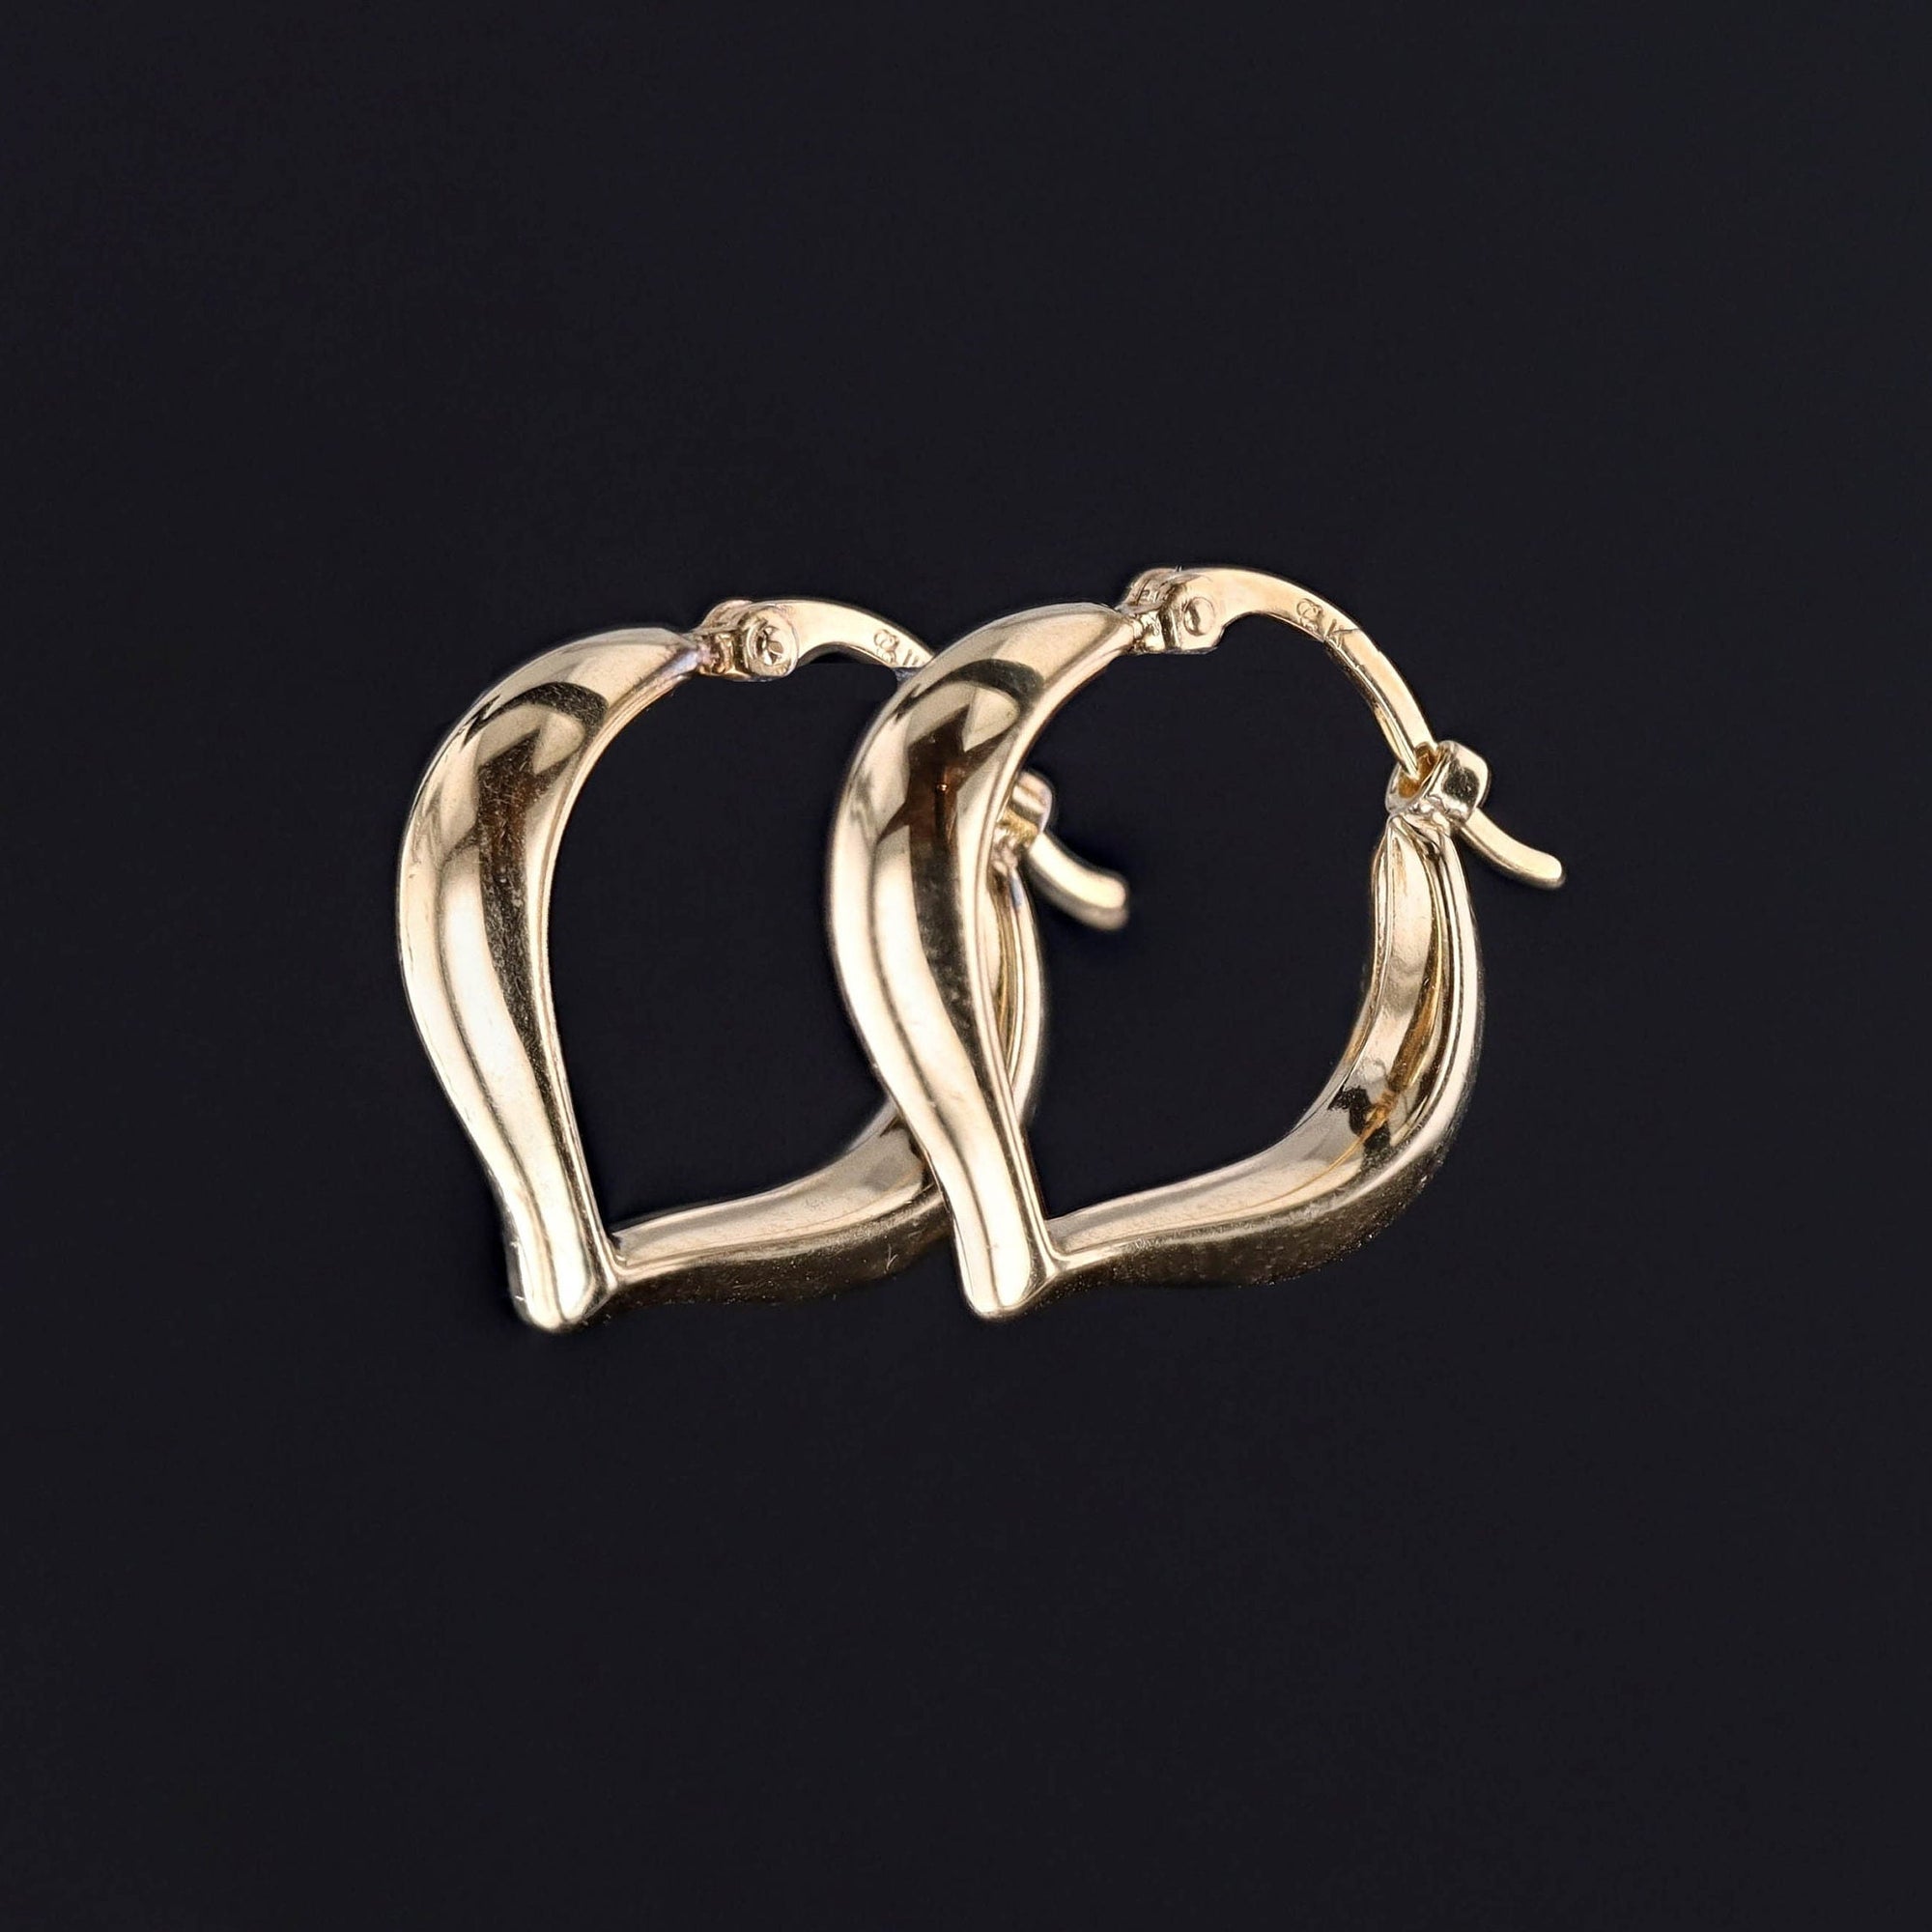 Vintage Heart Shaped Hoop Earrings of 14k Gold